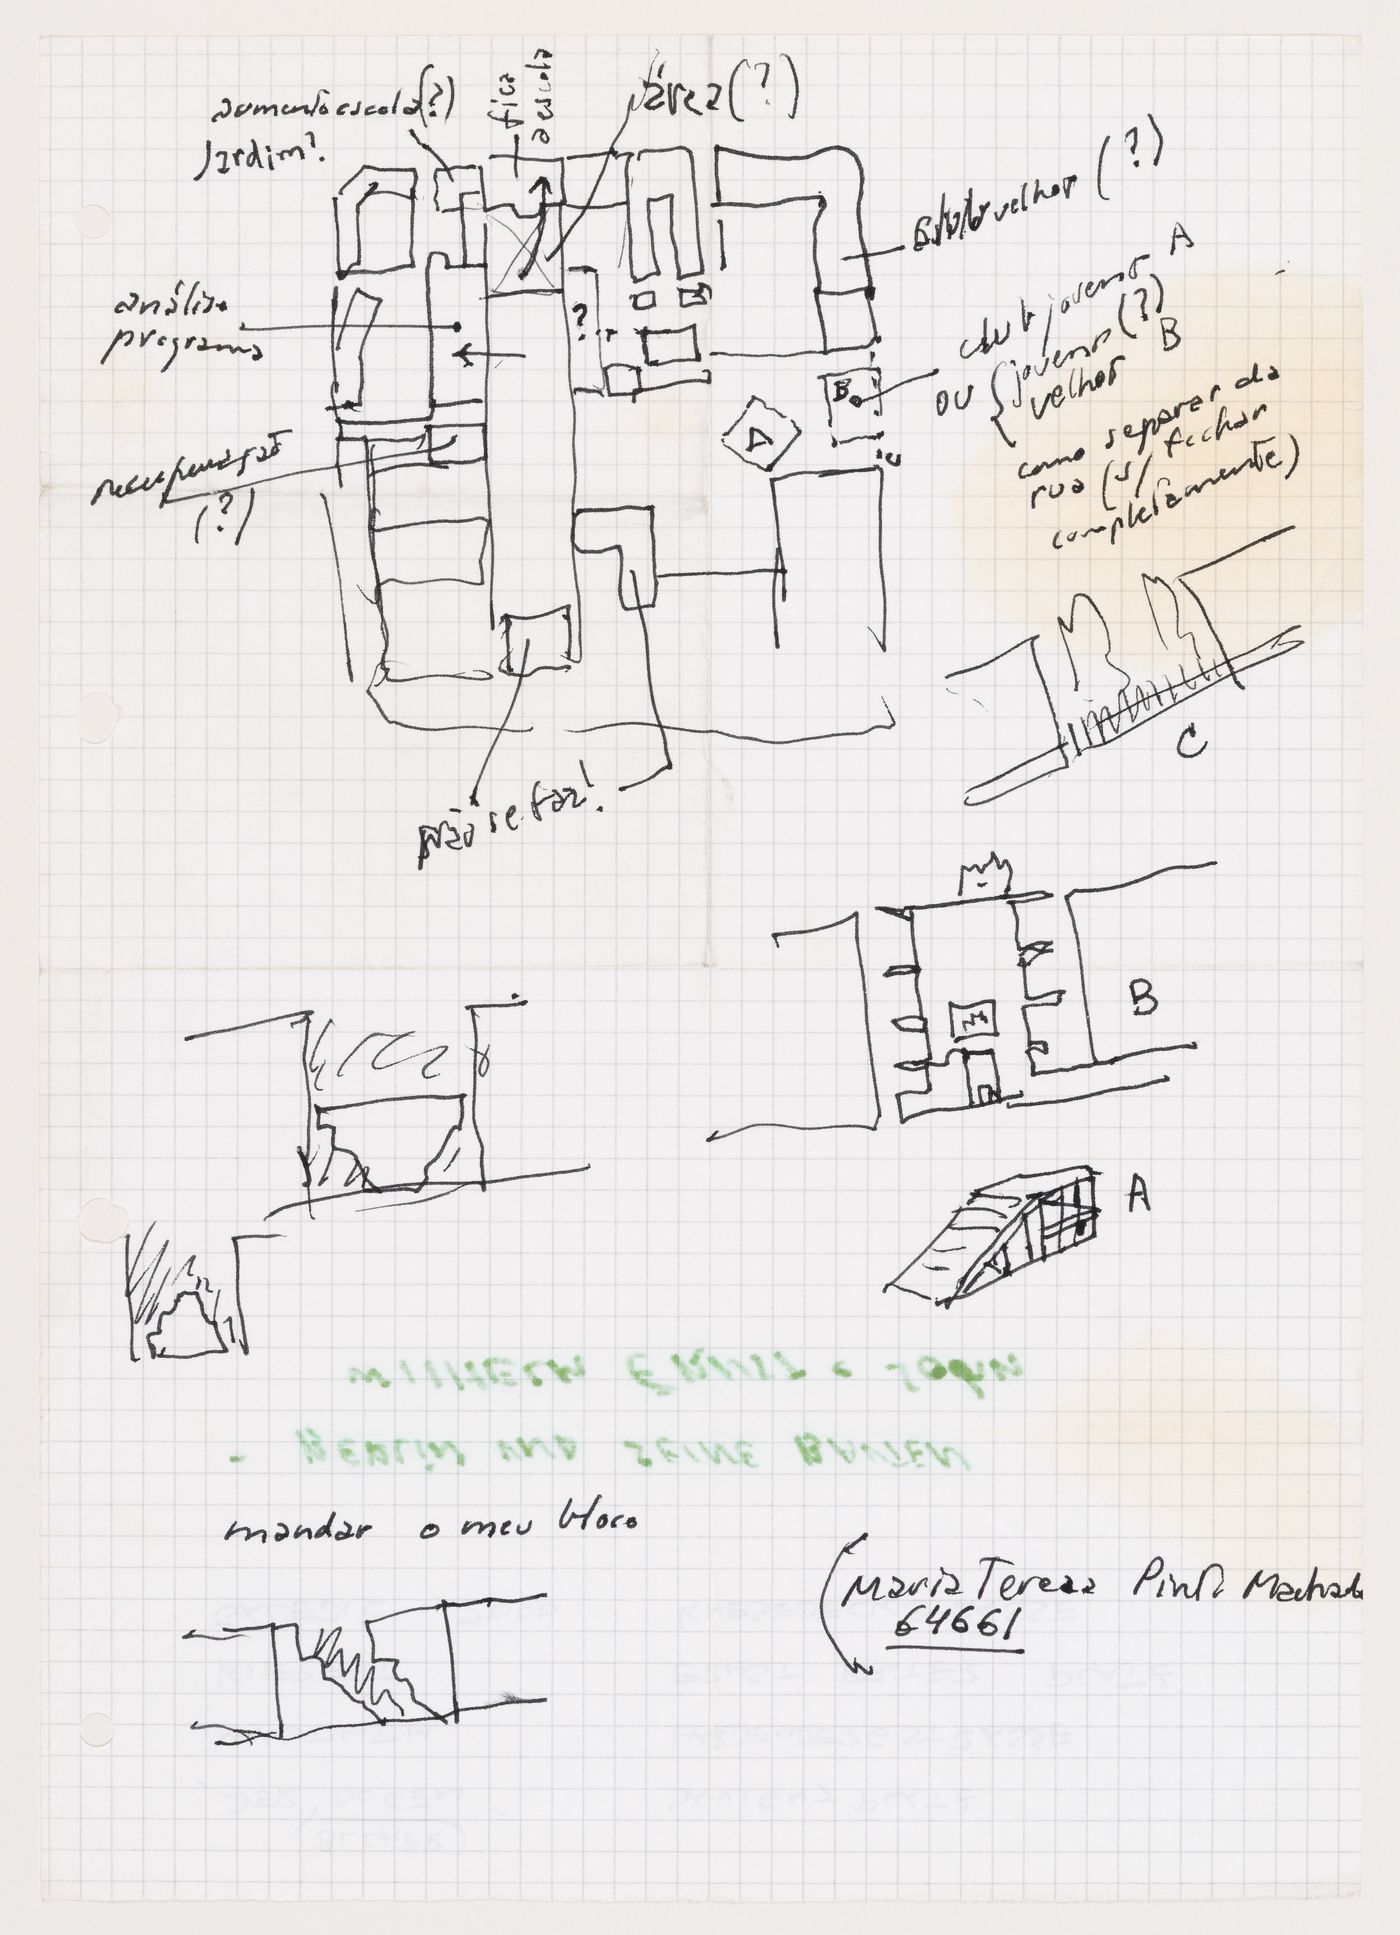 Sketches showing programmatic arrangement, Block 121, Berlin